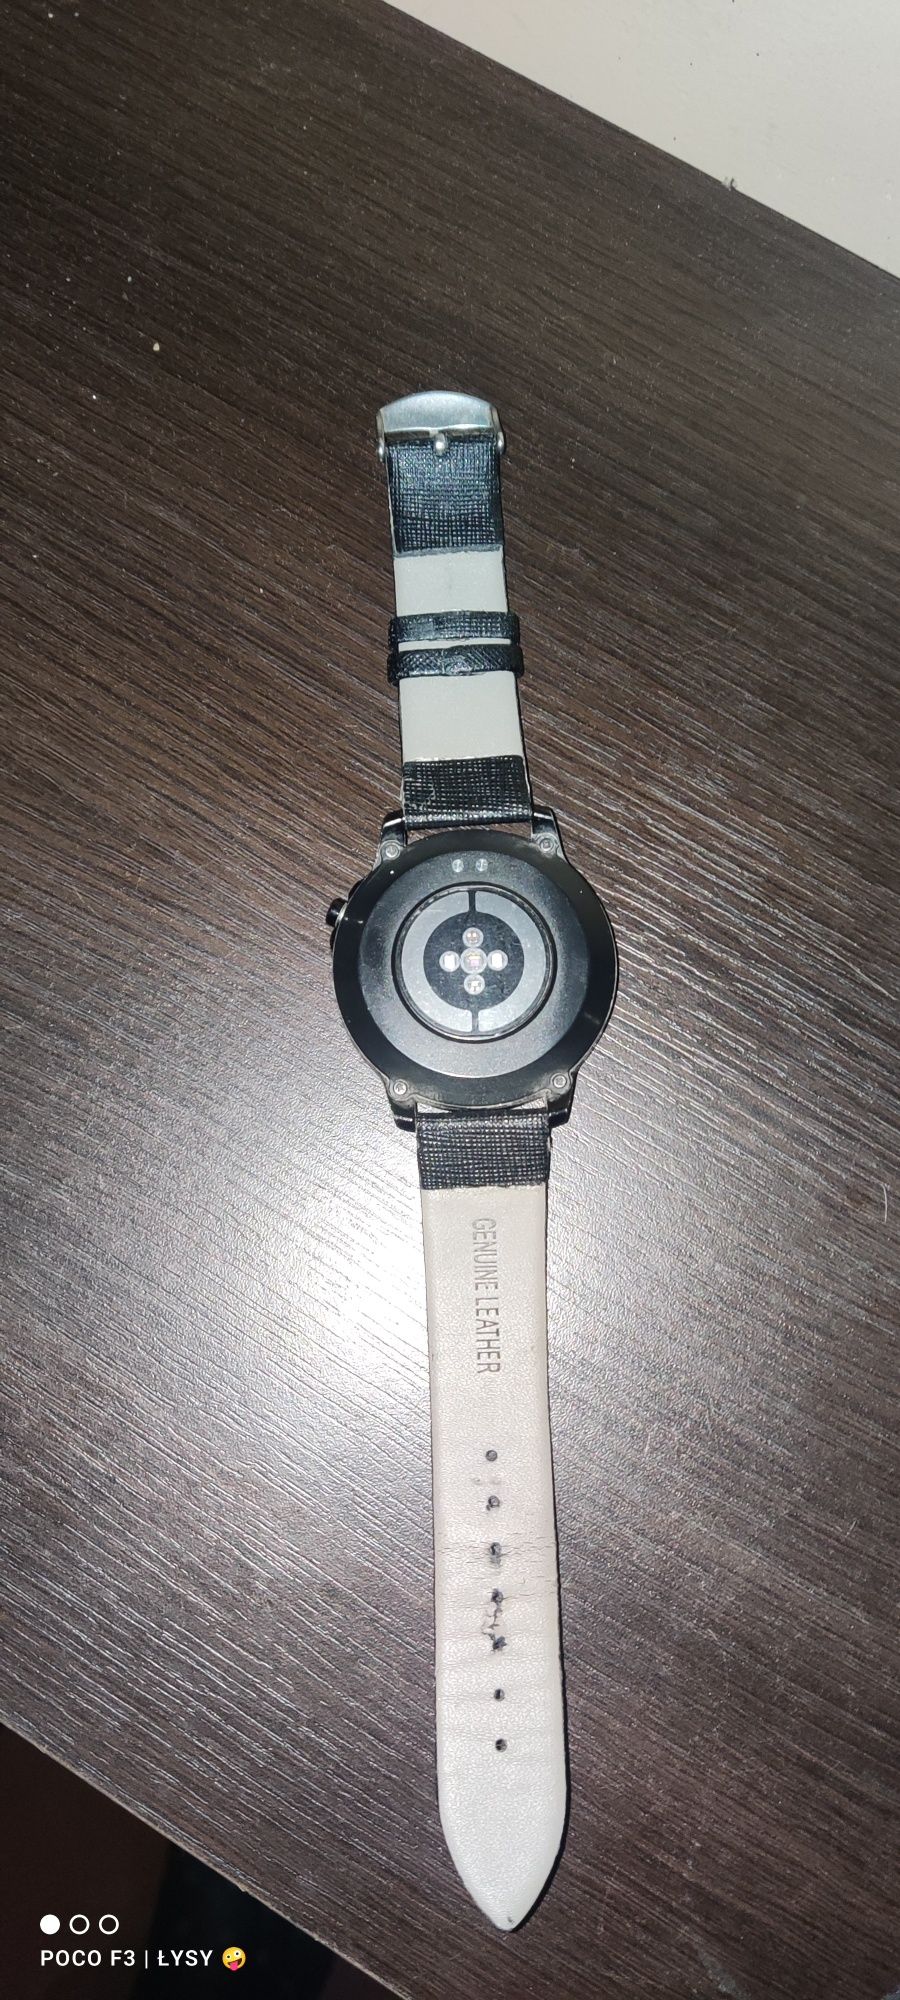 Smartwatch wodoszczelny L8 - inteligentny zegarek